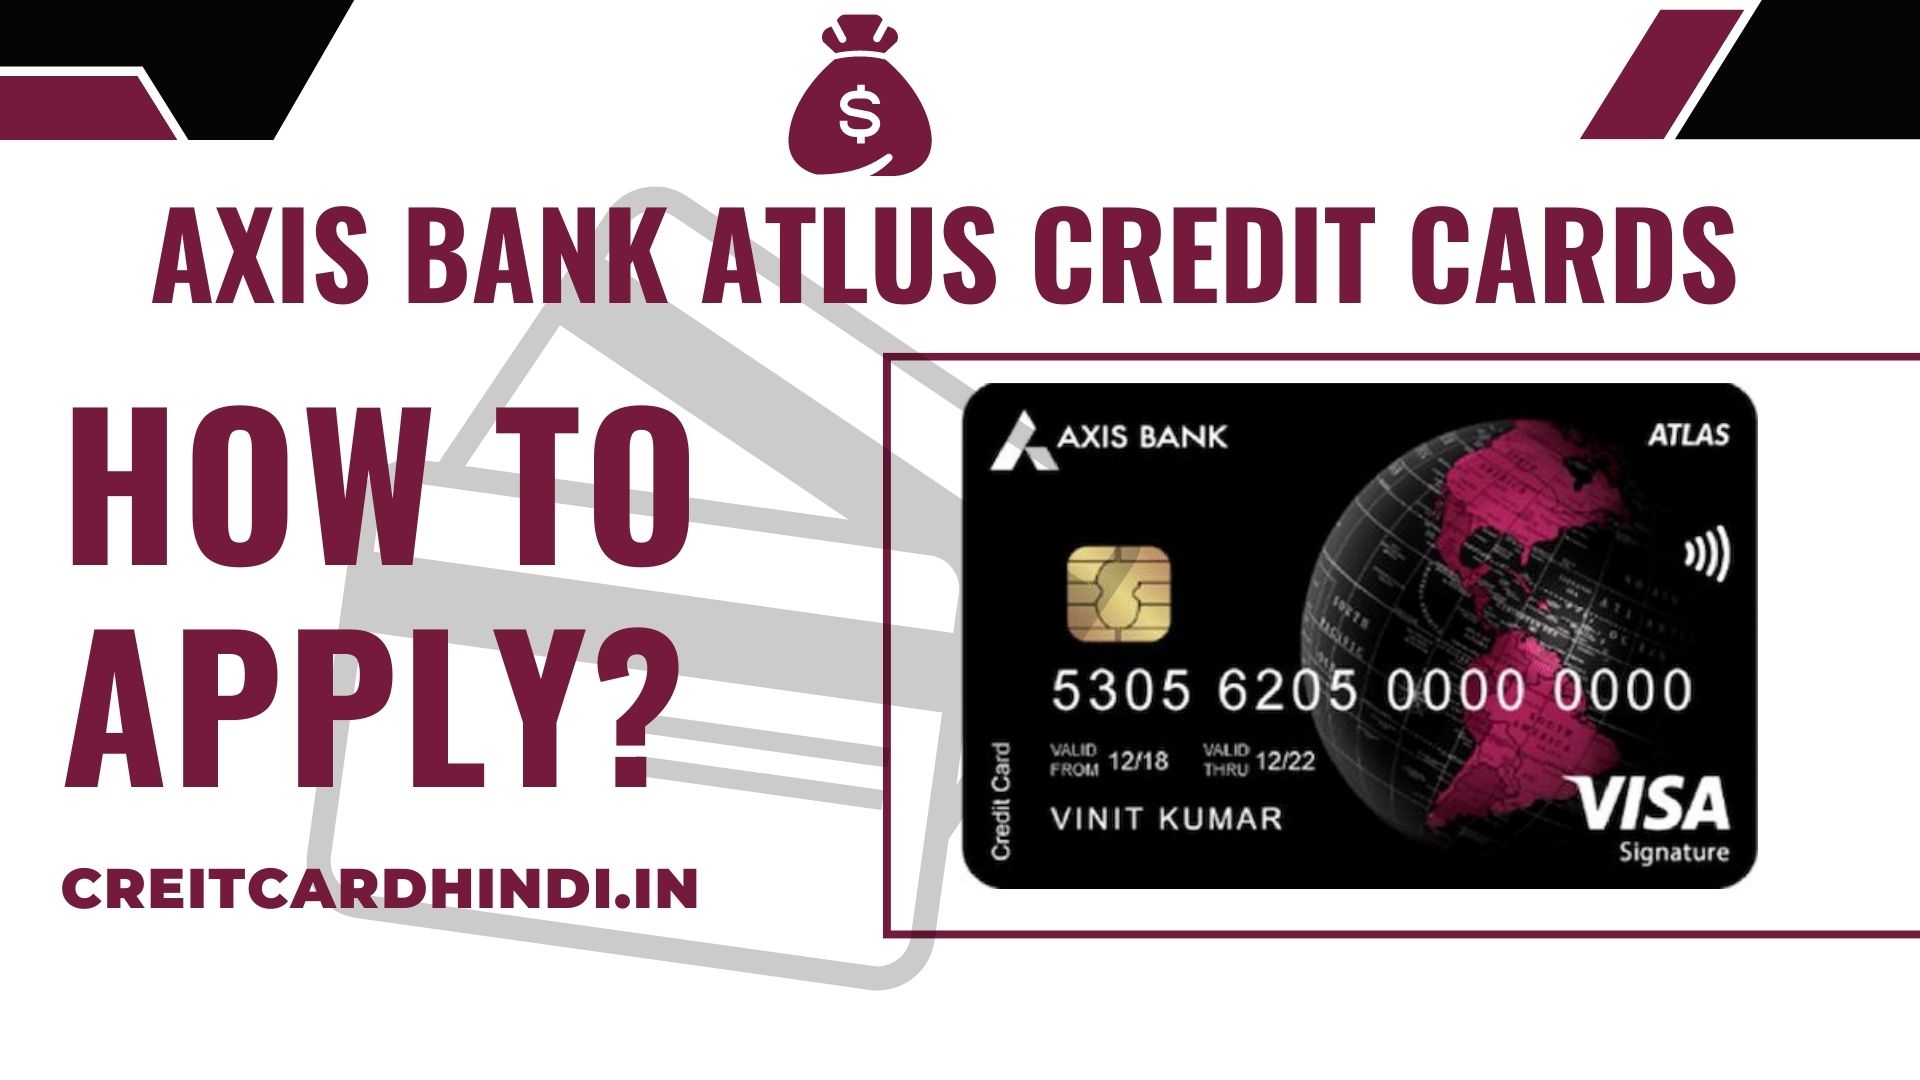 Axis Bank Atlus Credit Card के लिए अप्लाई कैसे करें?